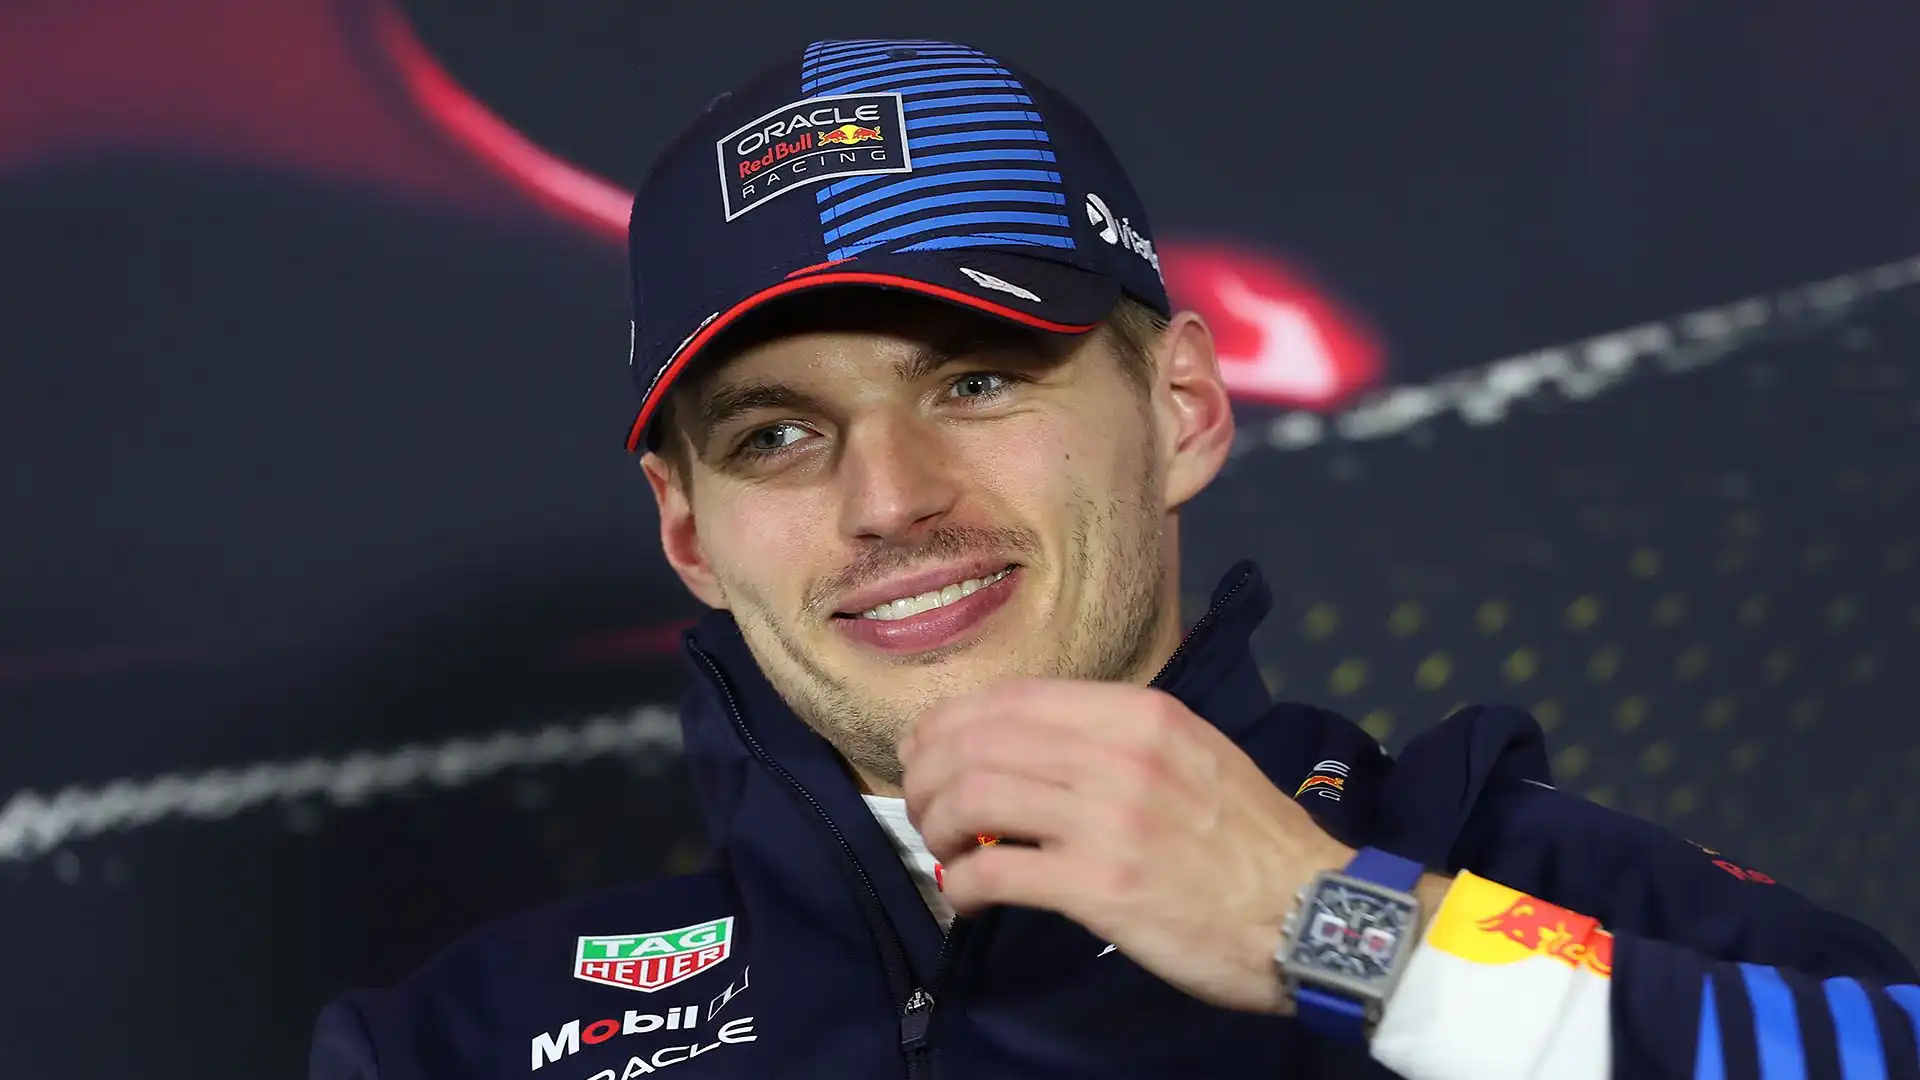 Considerando gli ultimi 50 Gran Premi, Verstappen ha vinto 38 volte